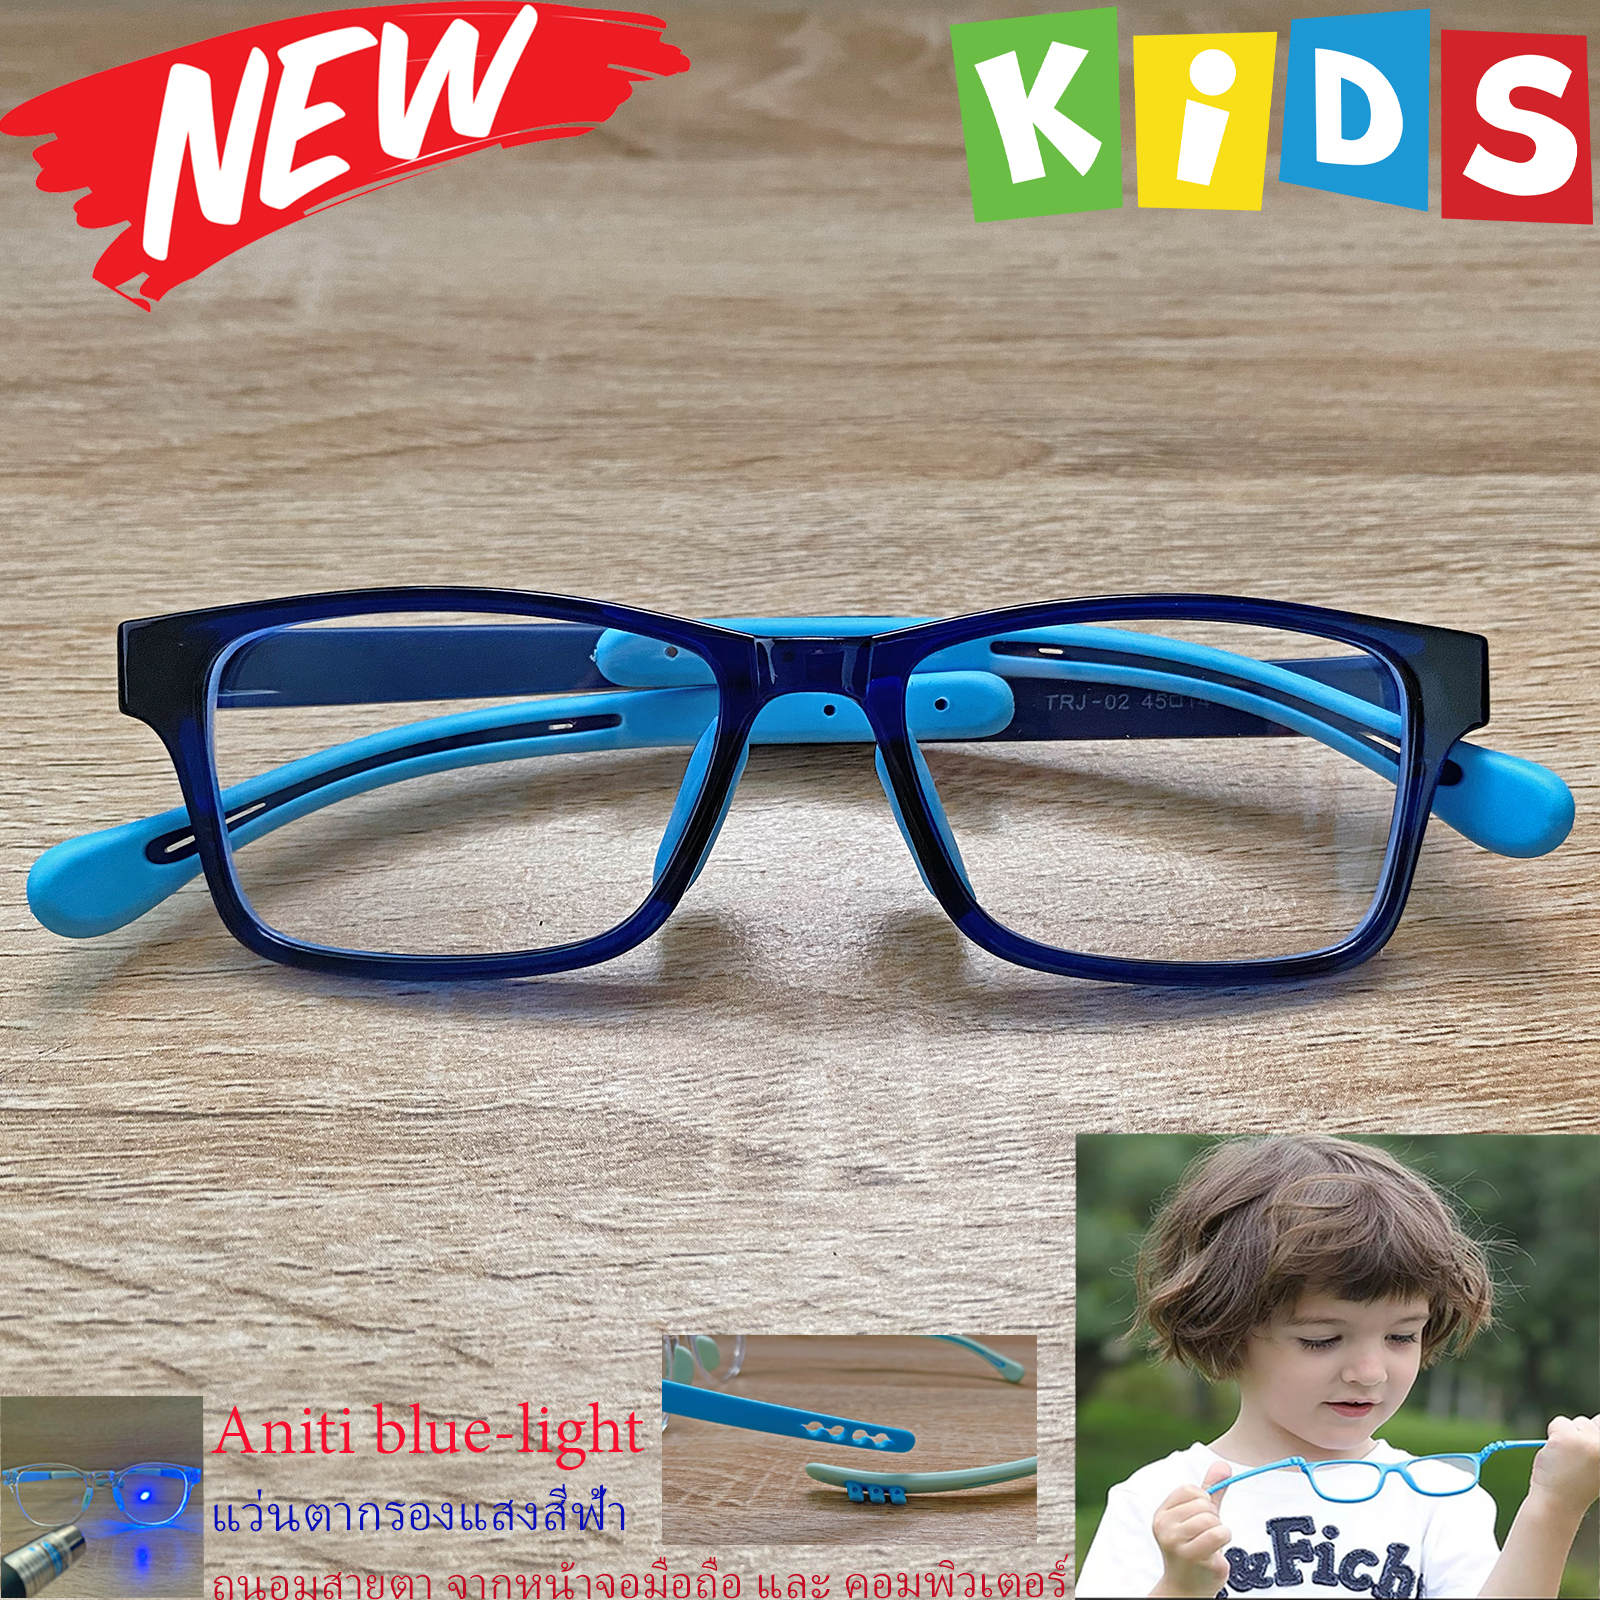 กรอบแว่นตาเด็ก กรองแสง สีฟ้า blue block แว่นเด็ก บลูบล็อค รุ่น 02 สีน้ำเงิน ขาข้อต่อยืดหยุ่น ขาปรับระดับได้ วัสดุTR90 เหมาะสำหรับเลนส์สายตา